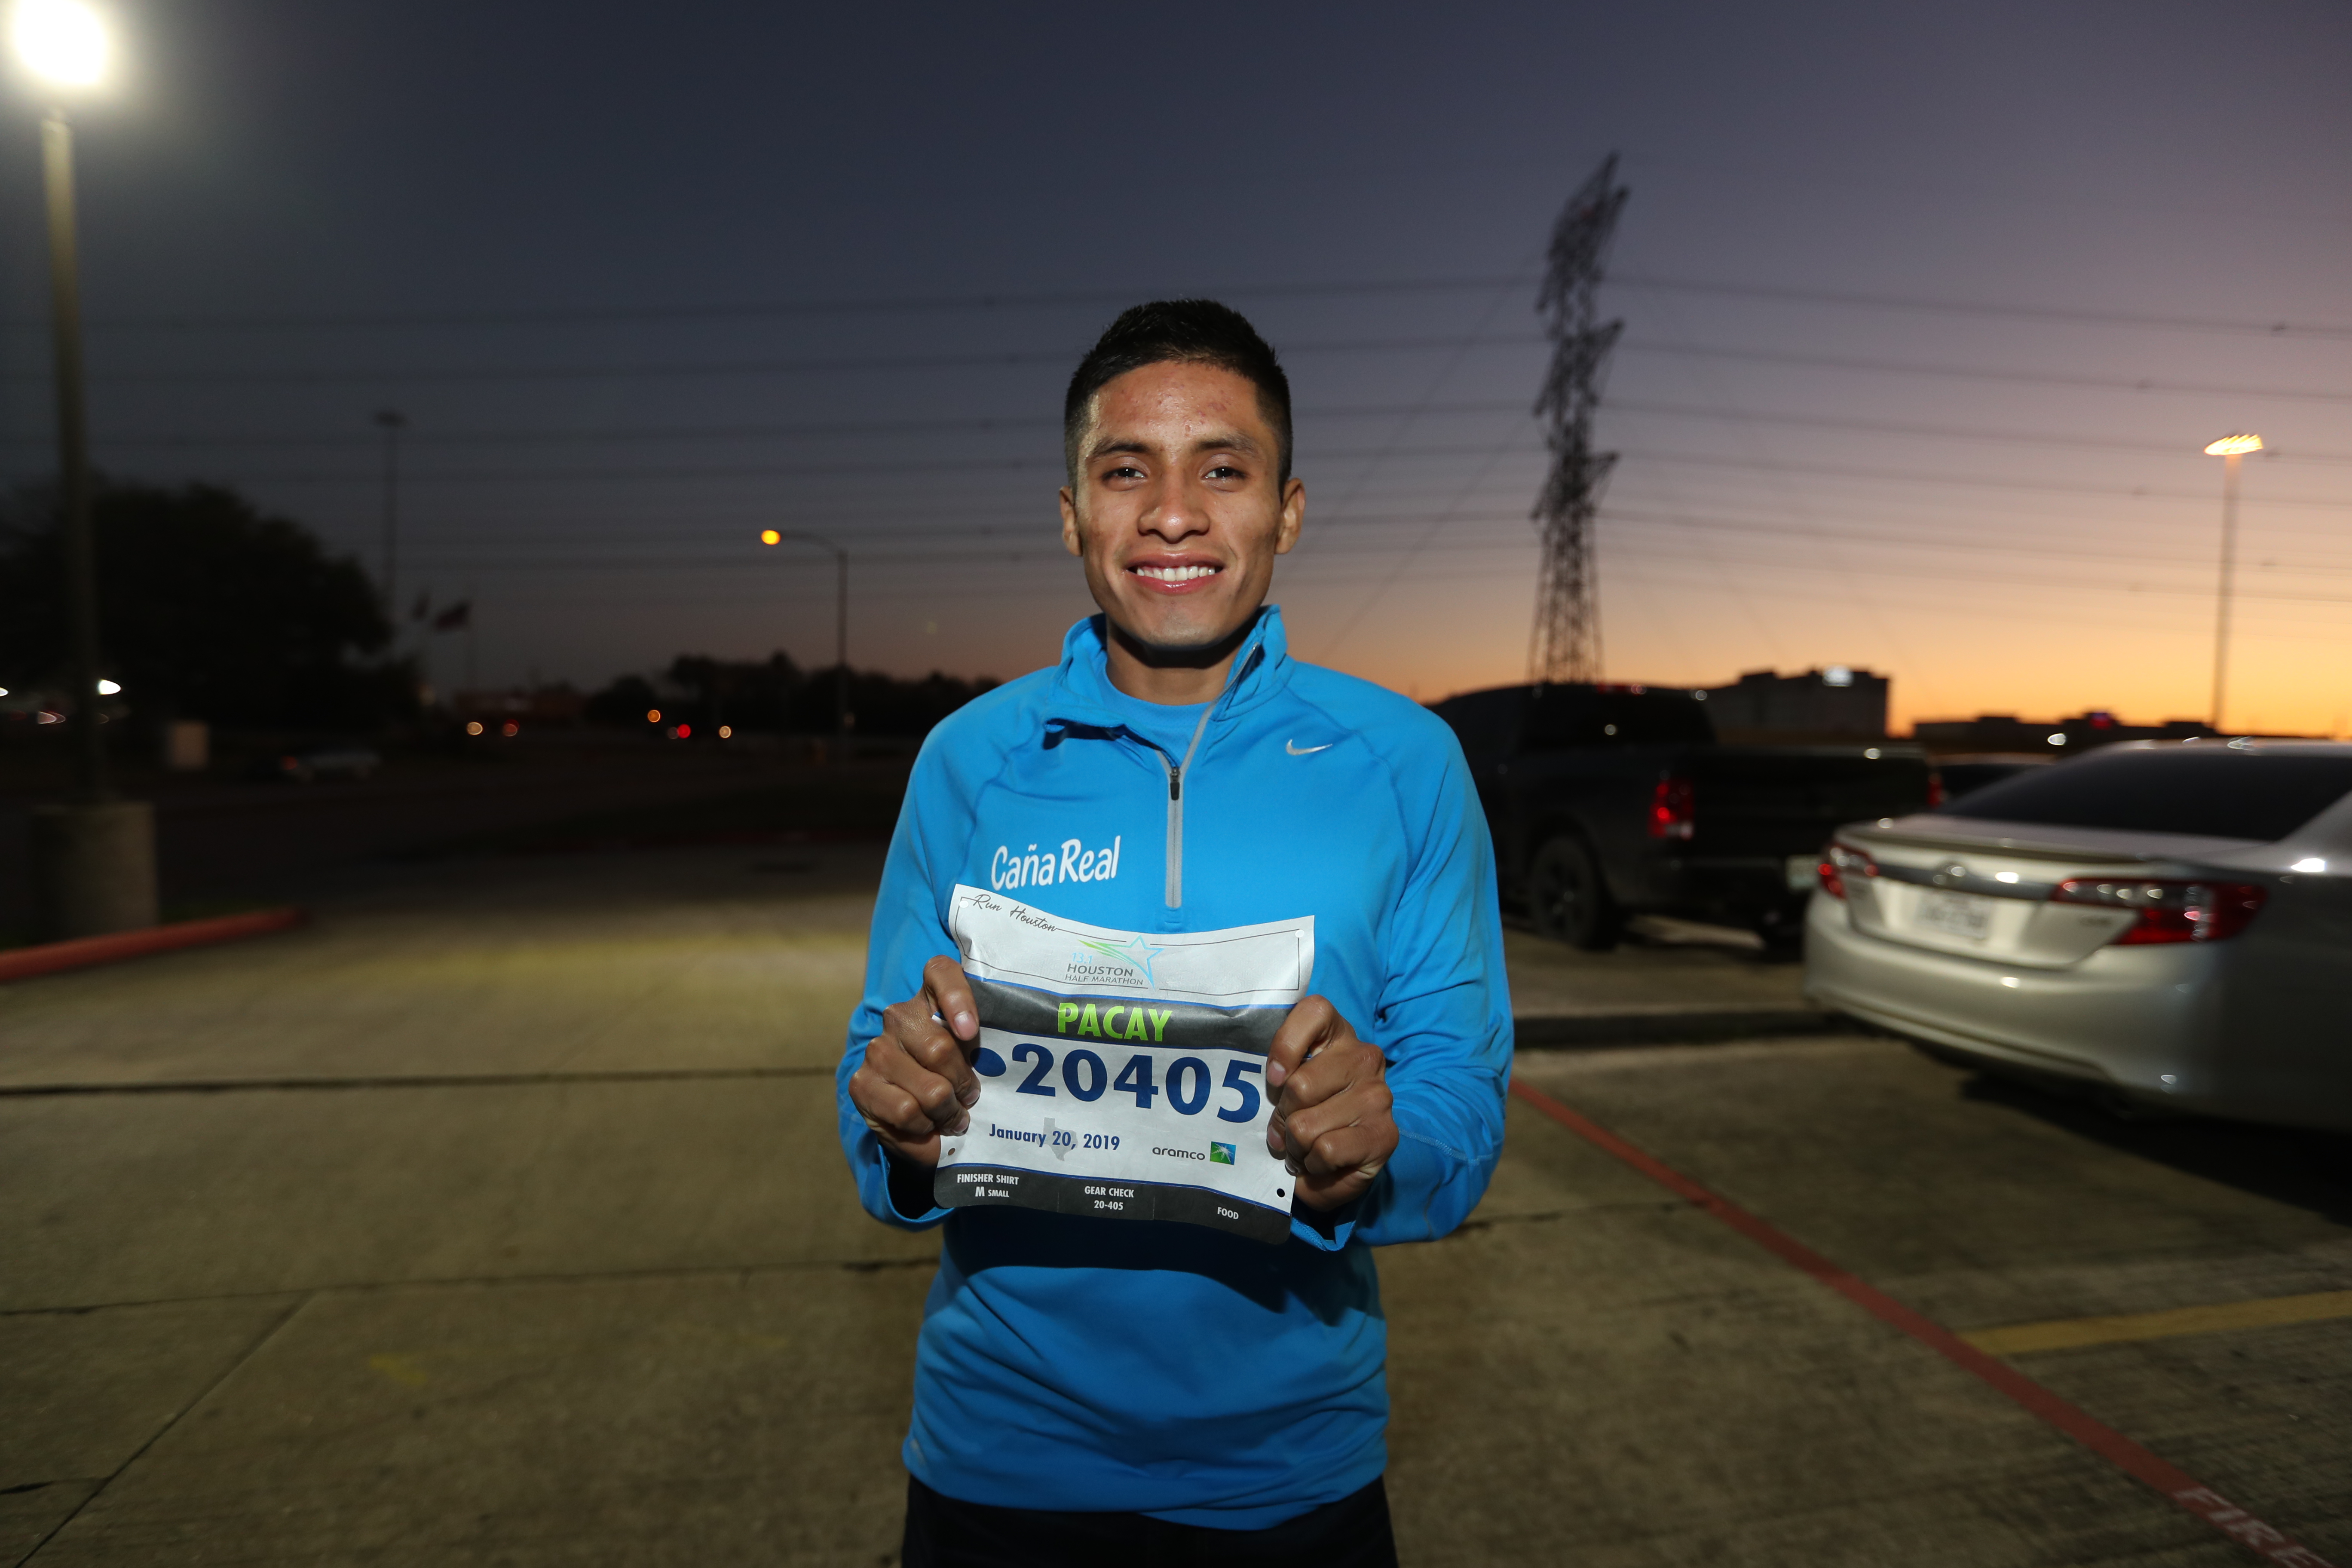 Mario Pacay portará el dorsal 20405, durante su participación en el Medio Maratón de Houston. (Foto Prensa Libre: Francisco Sánchez).